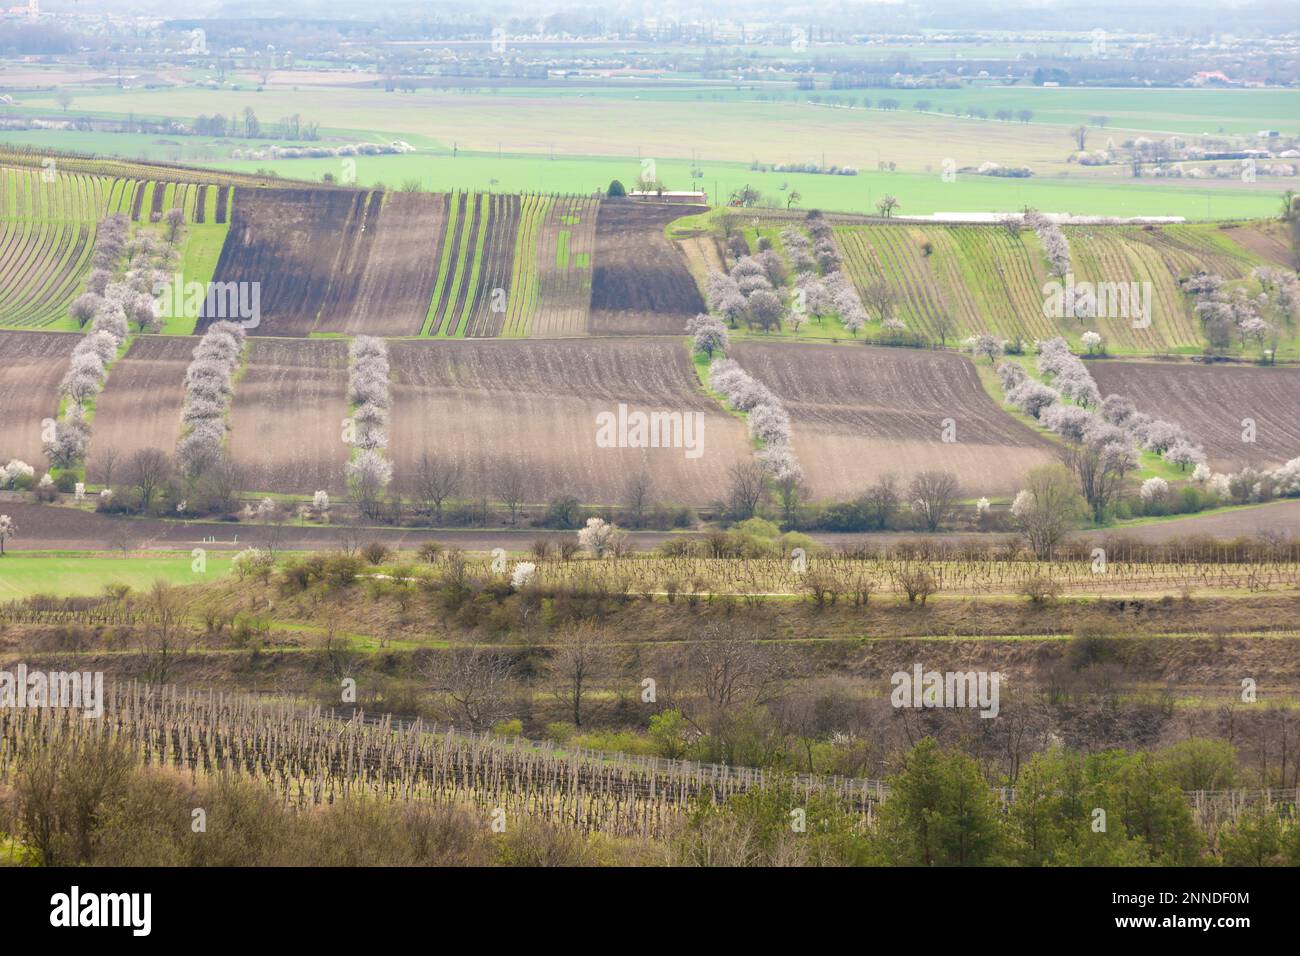 spring landscape with vineyards near Velke Pavlovice, Southern Moravia, Czech Republic Stock Photo